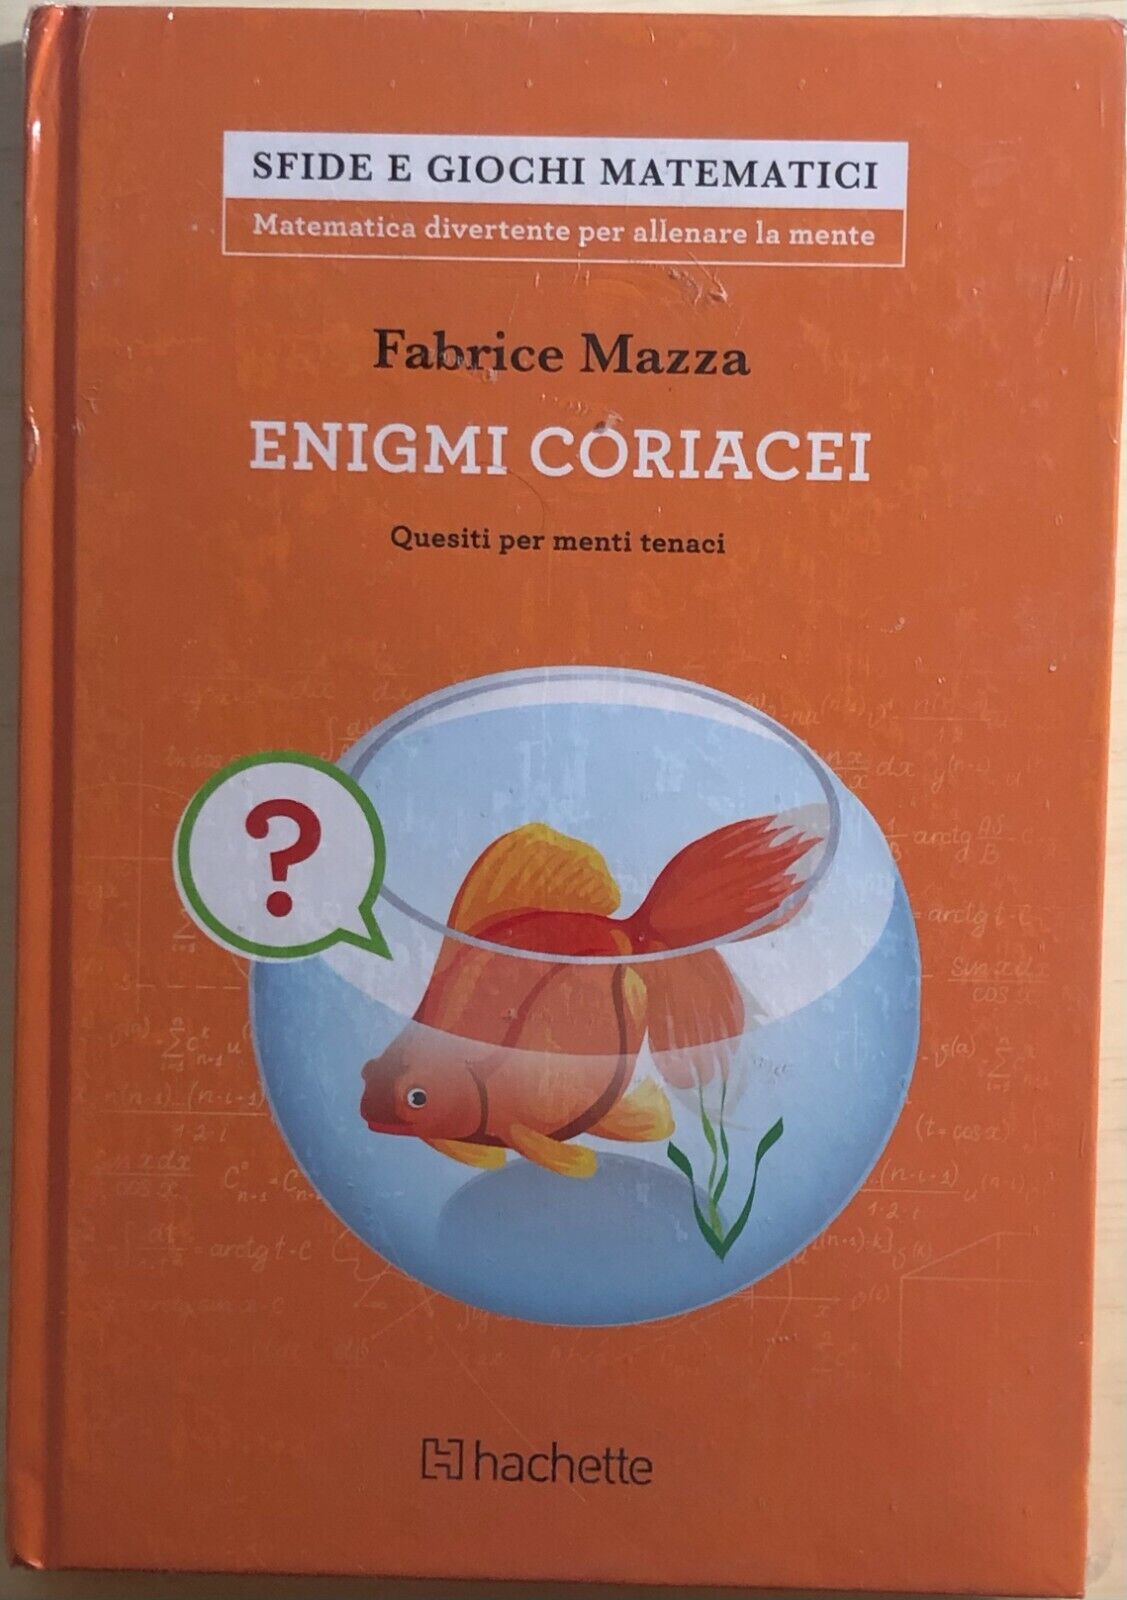 Enigmi coriacei di Fabrice Mazza,  2018,  Hachette